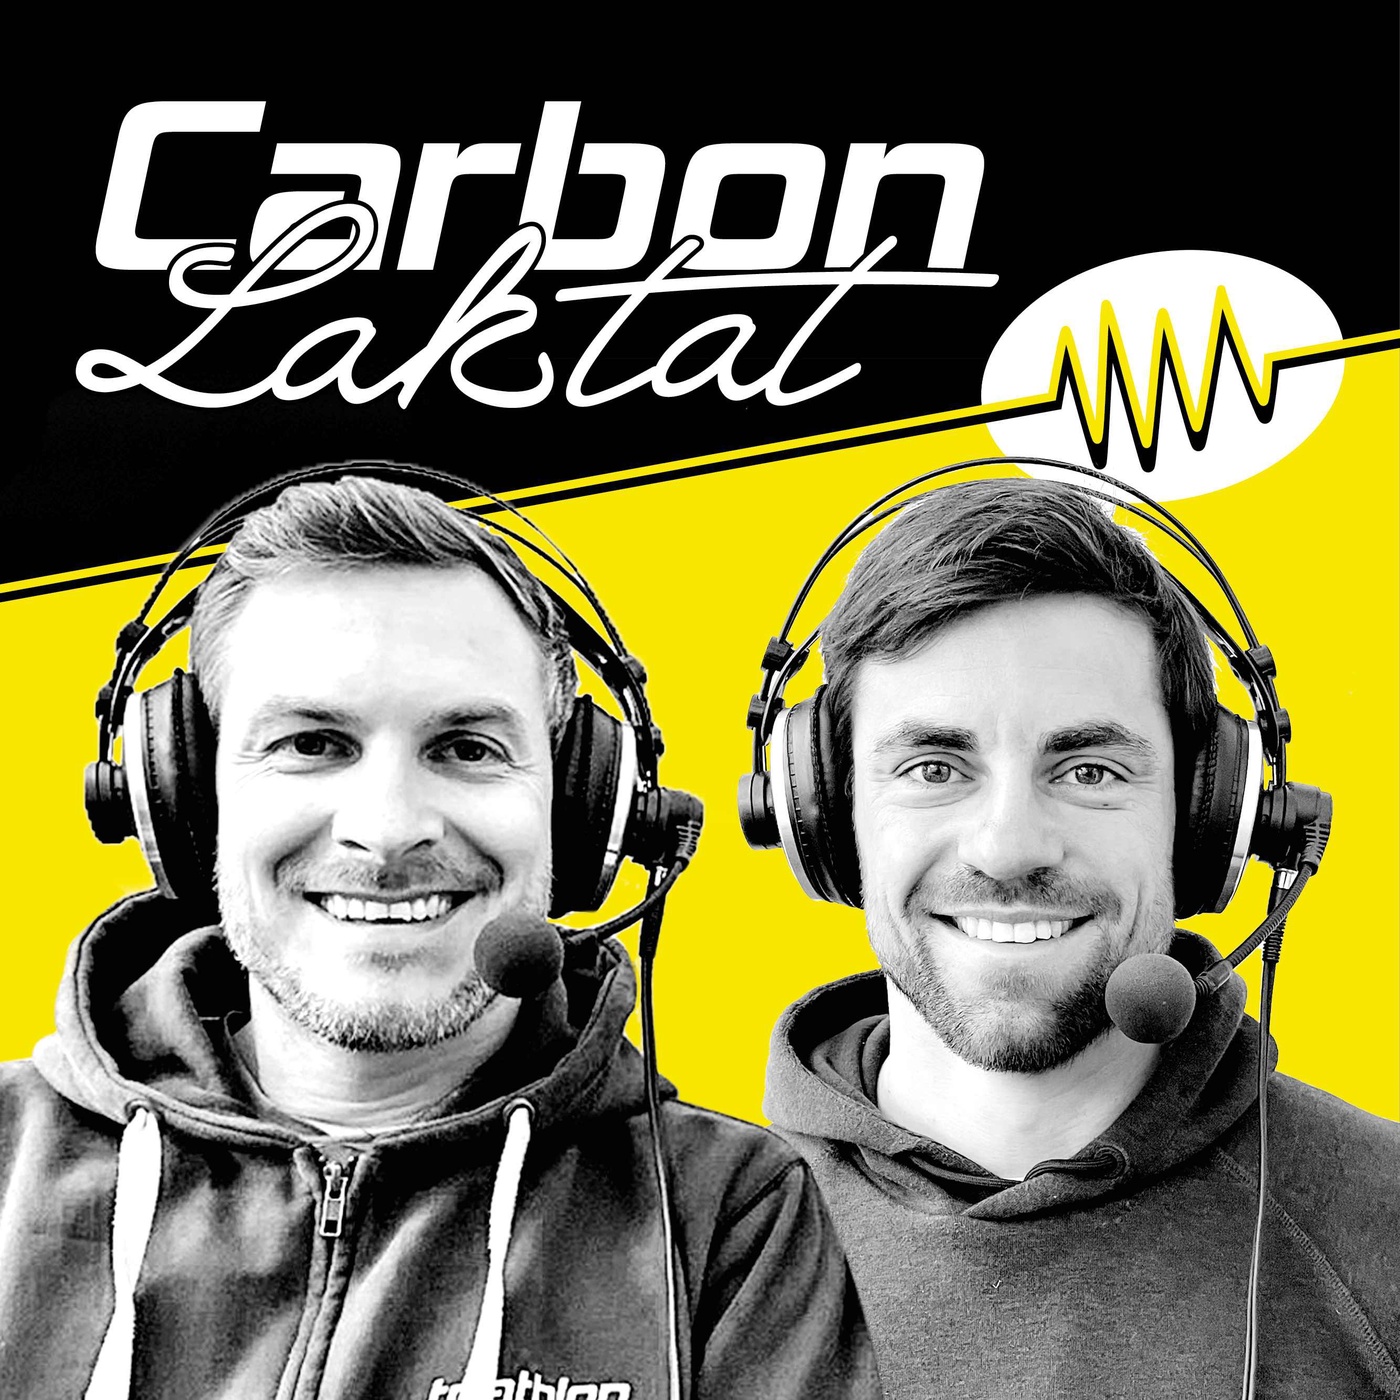 Carbon & Laktat: Kienle auf dem Weg nach Norwegen! Iden auf dem Weg zum GOAT?